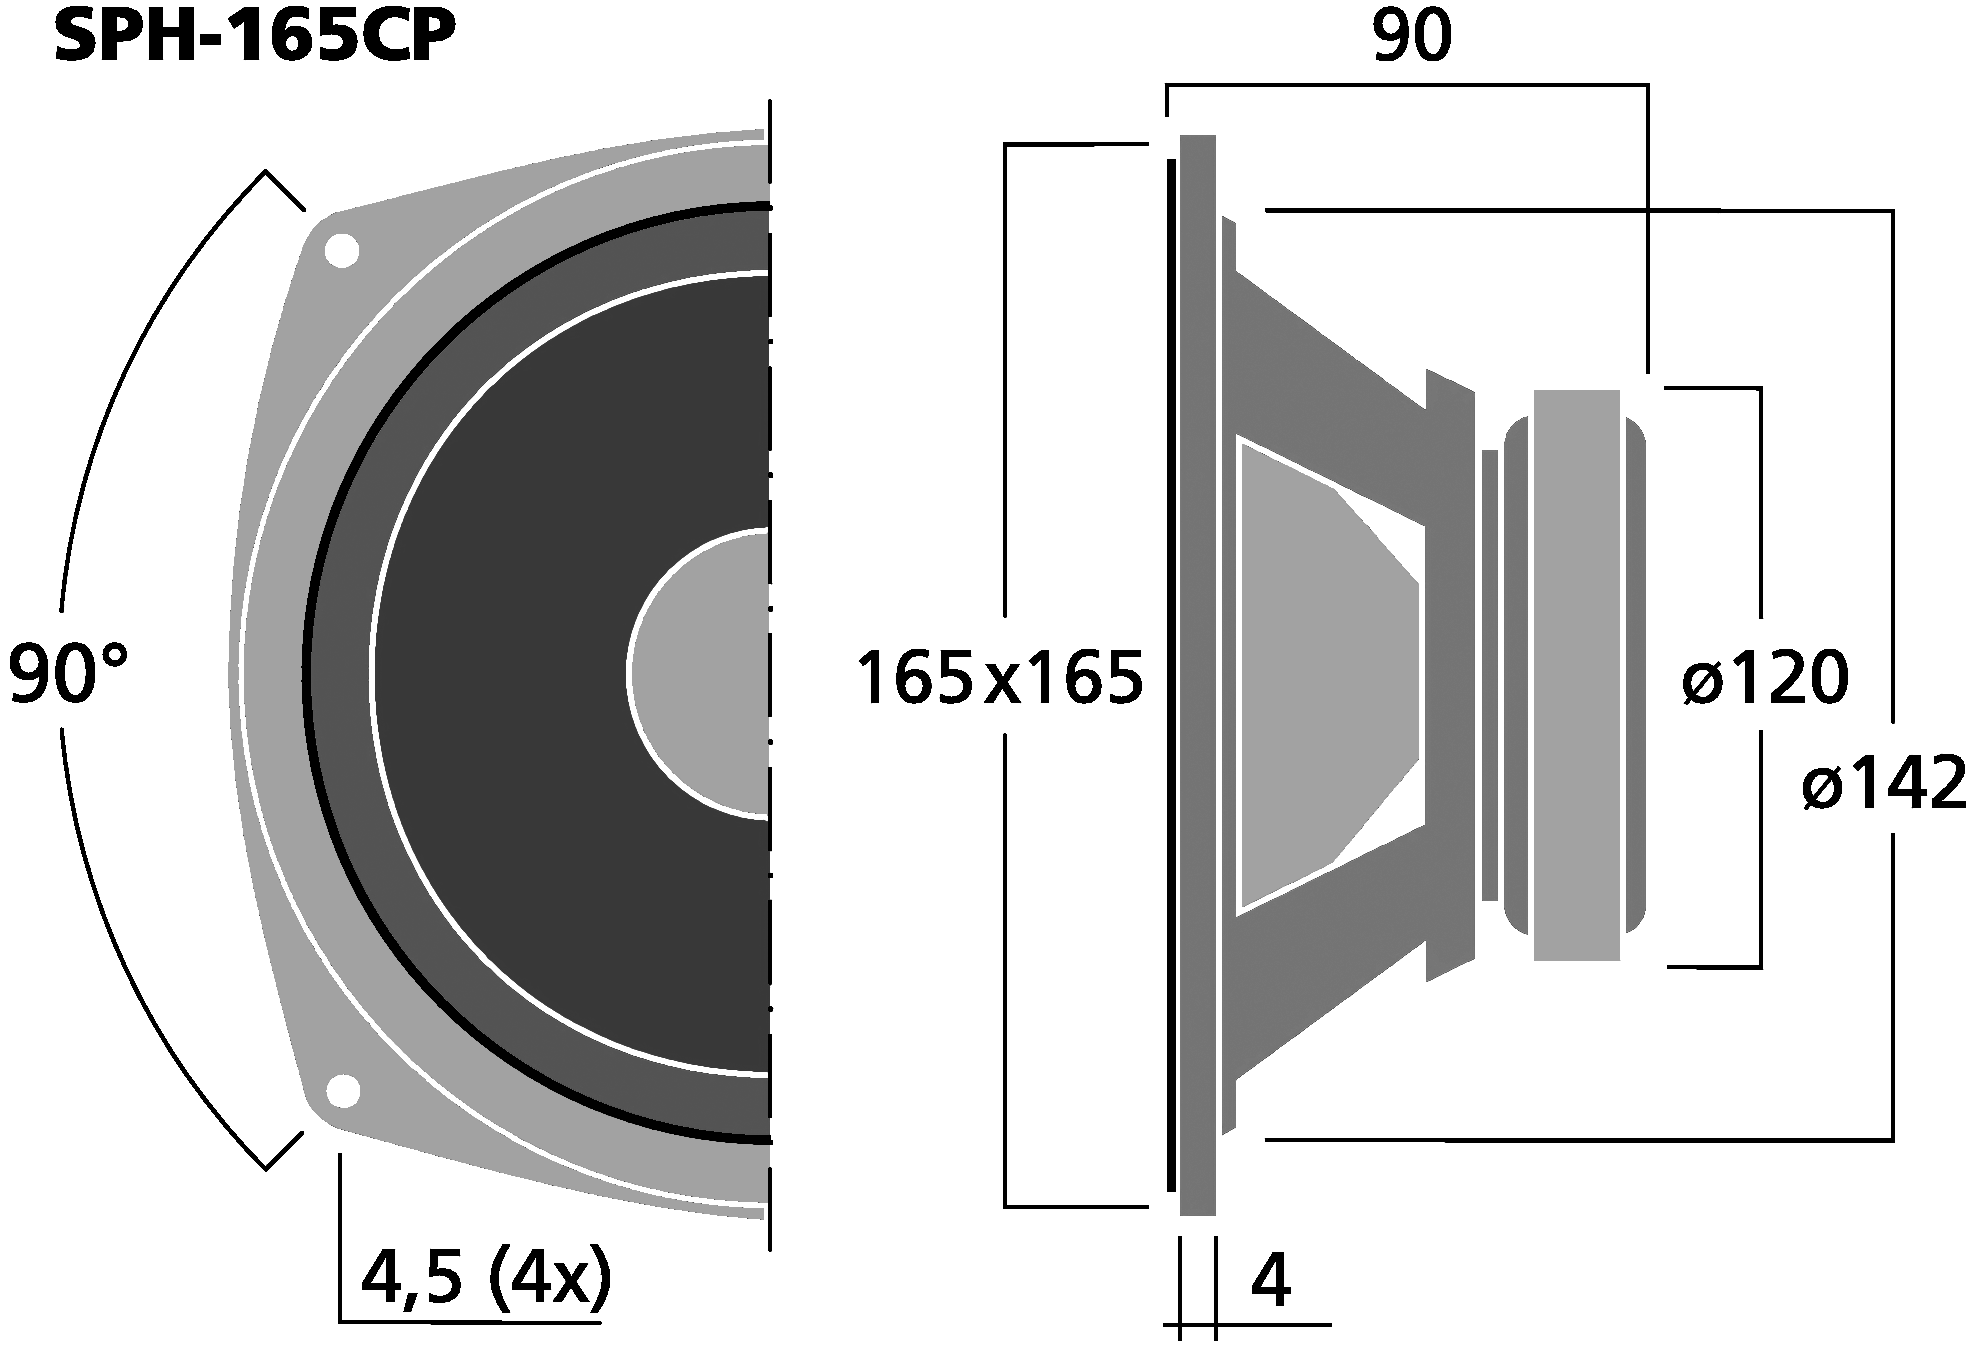 Haut-parleur Monacor SPH-165CP, 8 ohm, 165 x 165 mm